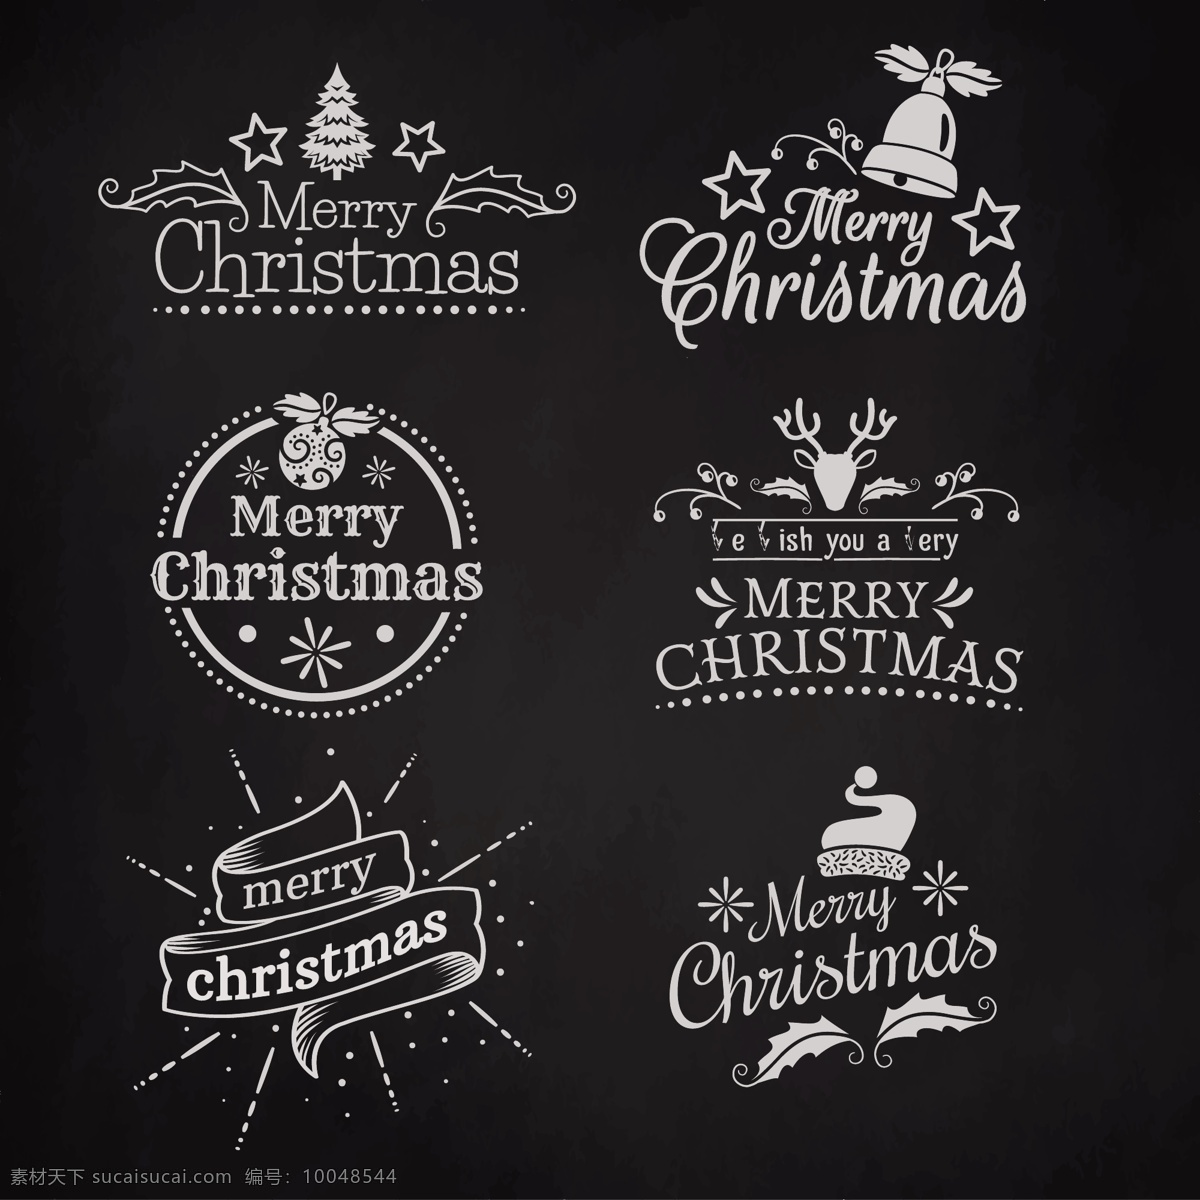 款 创意 英文 圣诞 标签 2018圣诞 标签设计 创意标签下载 促销标签 节日标签 节日元素 圣诞标签 圣诞庆典 圣诞元素下载 矢量标签 圆形标签